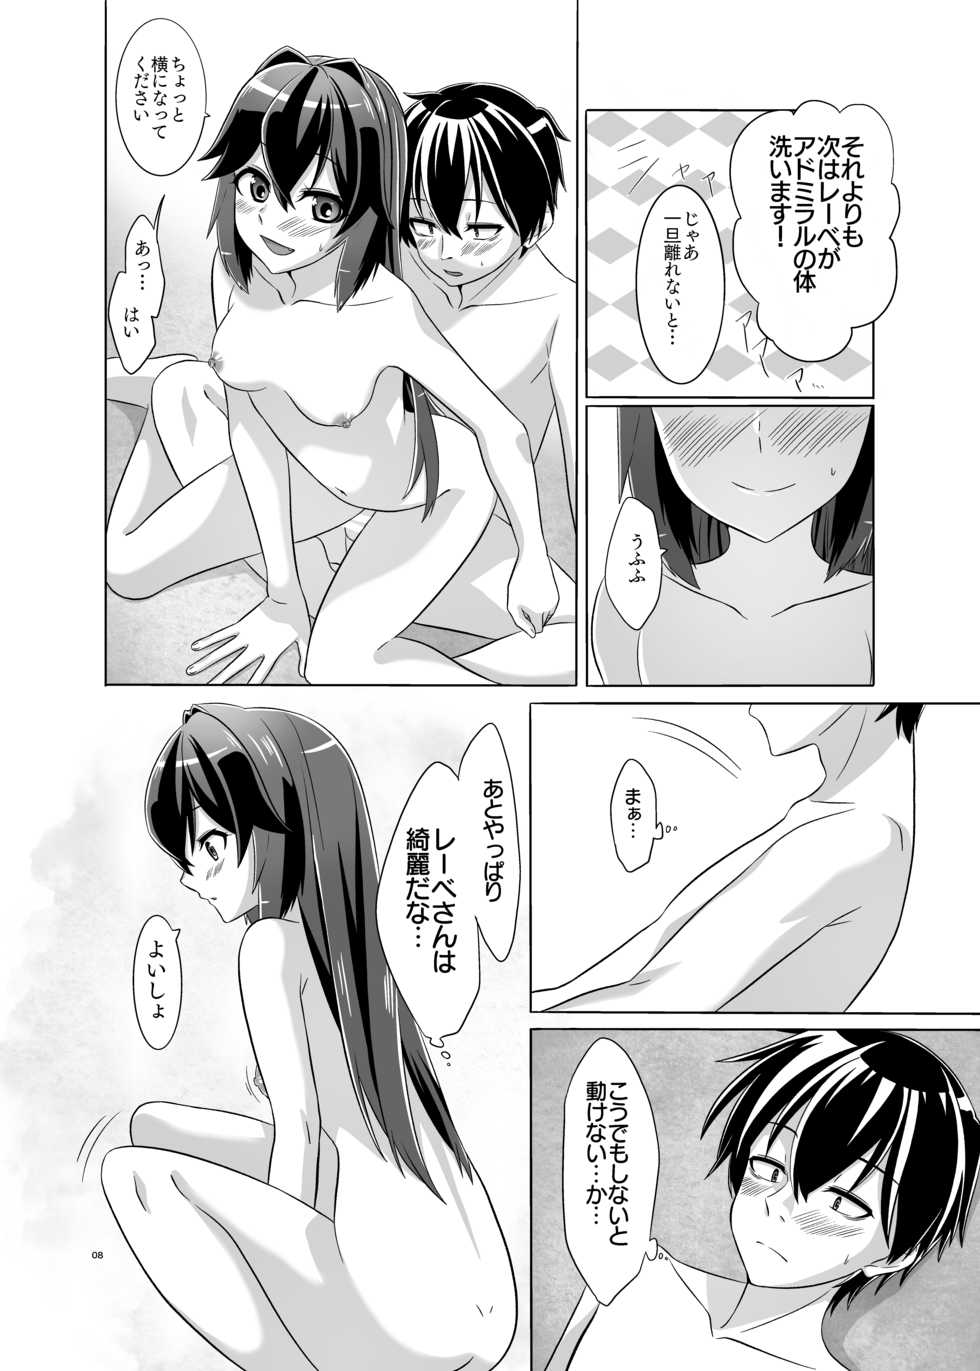 [Torutī-ya] Itsumo no yoru futari no yotogi 2 (Warship Girls R) - Page 9